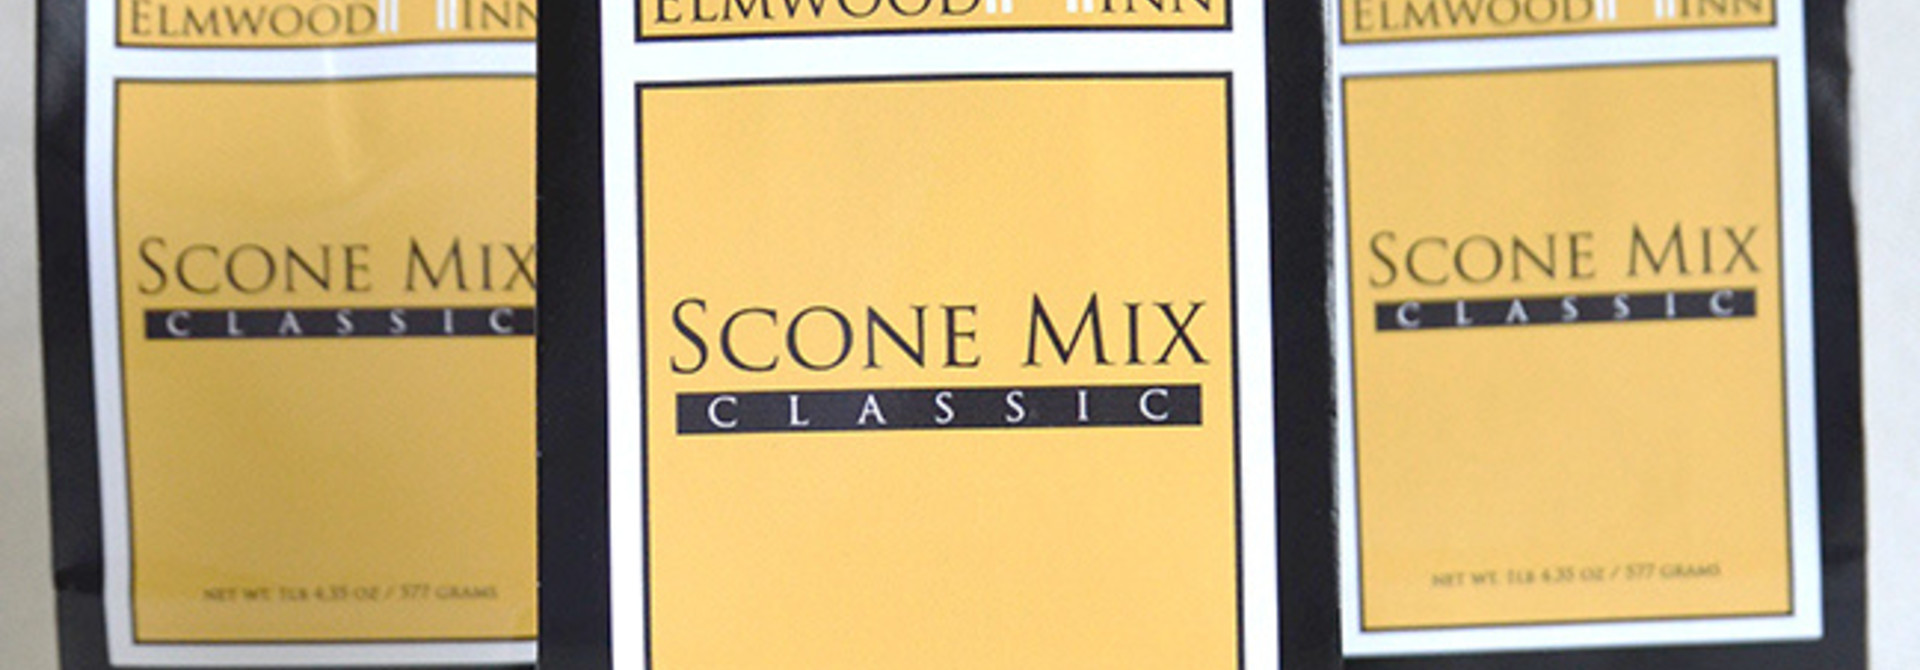 Scone Mix by Elmwood Inn